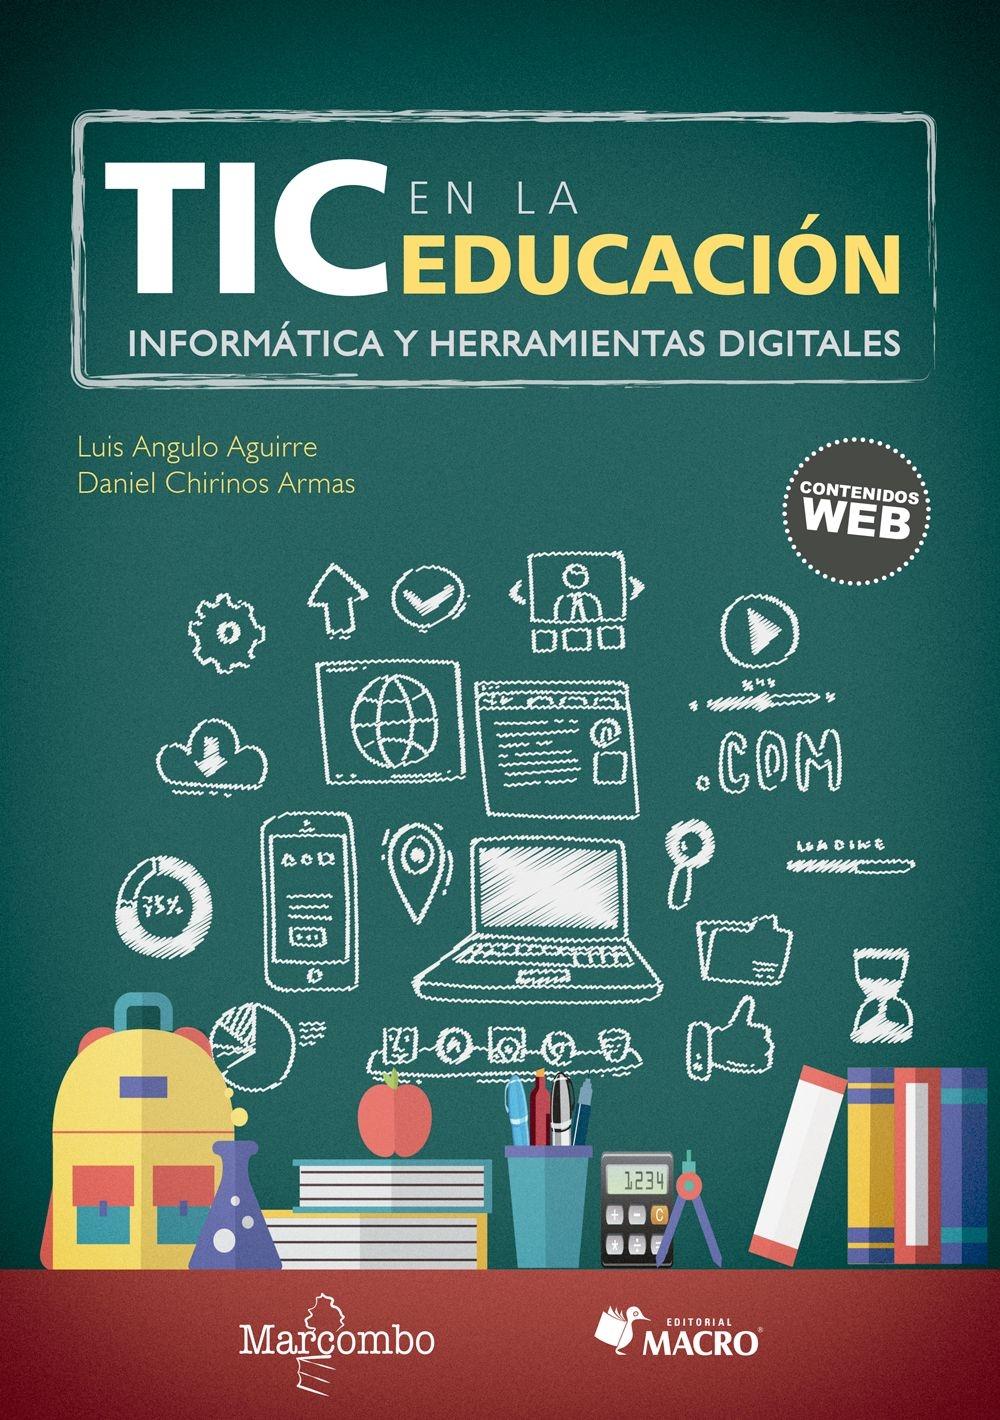 TIC en la educación "Informática y herramientas digitales"